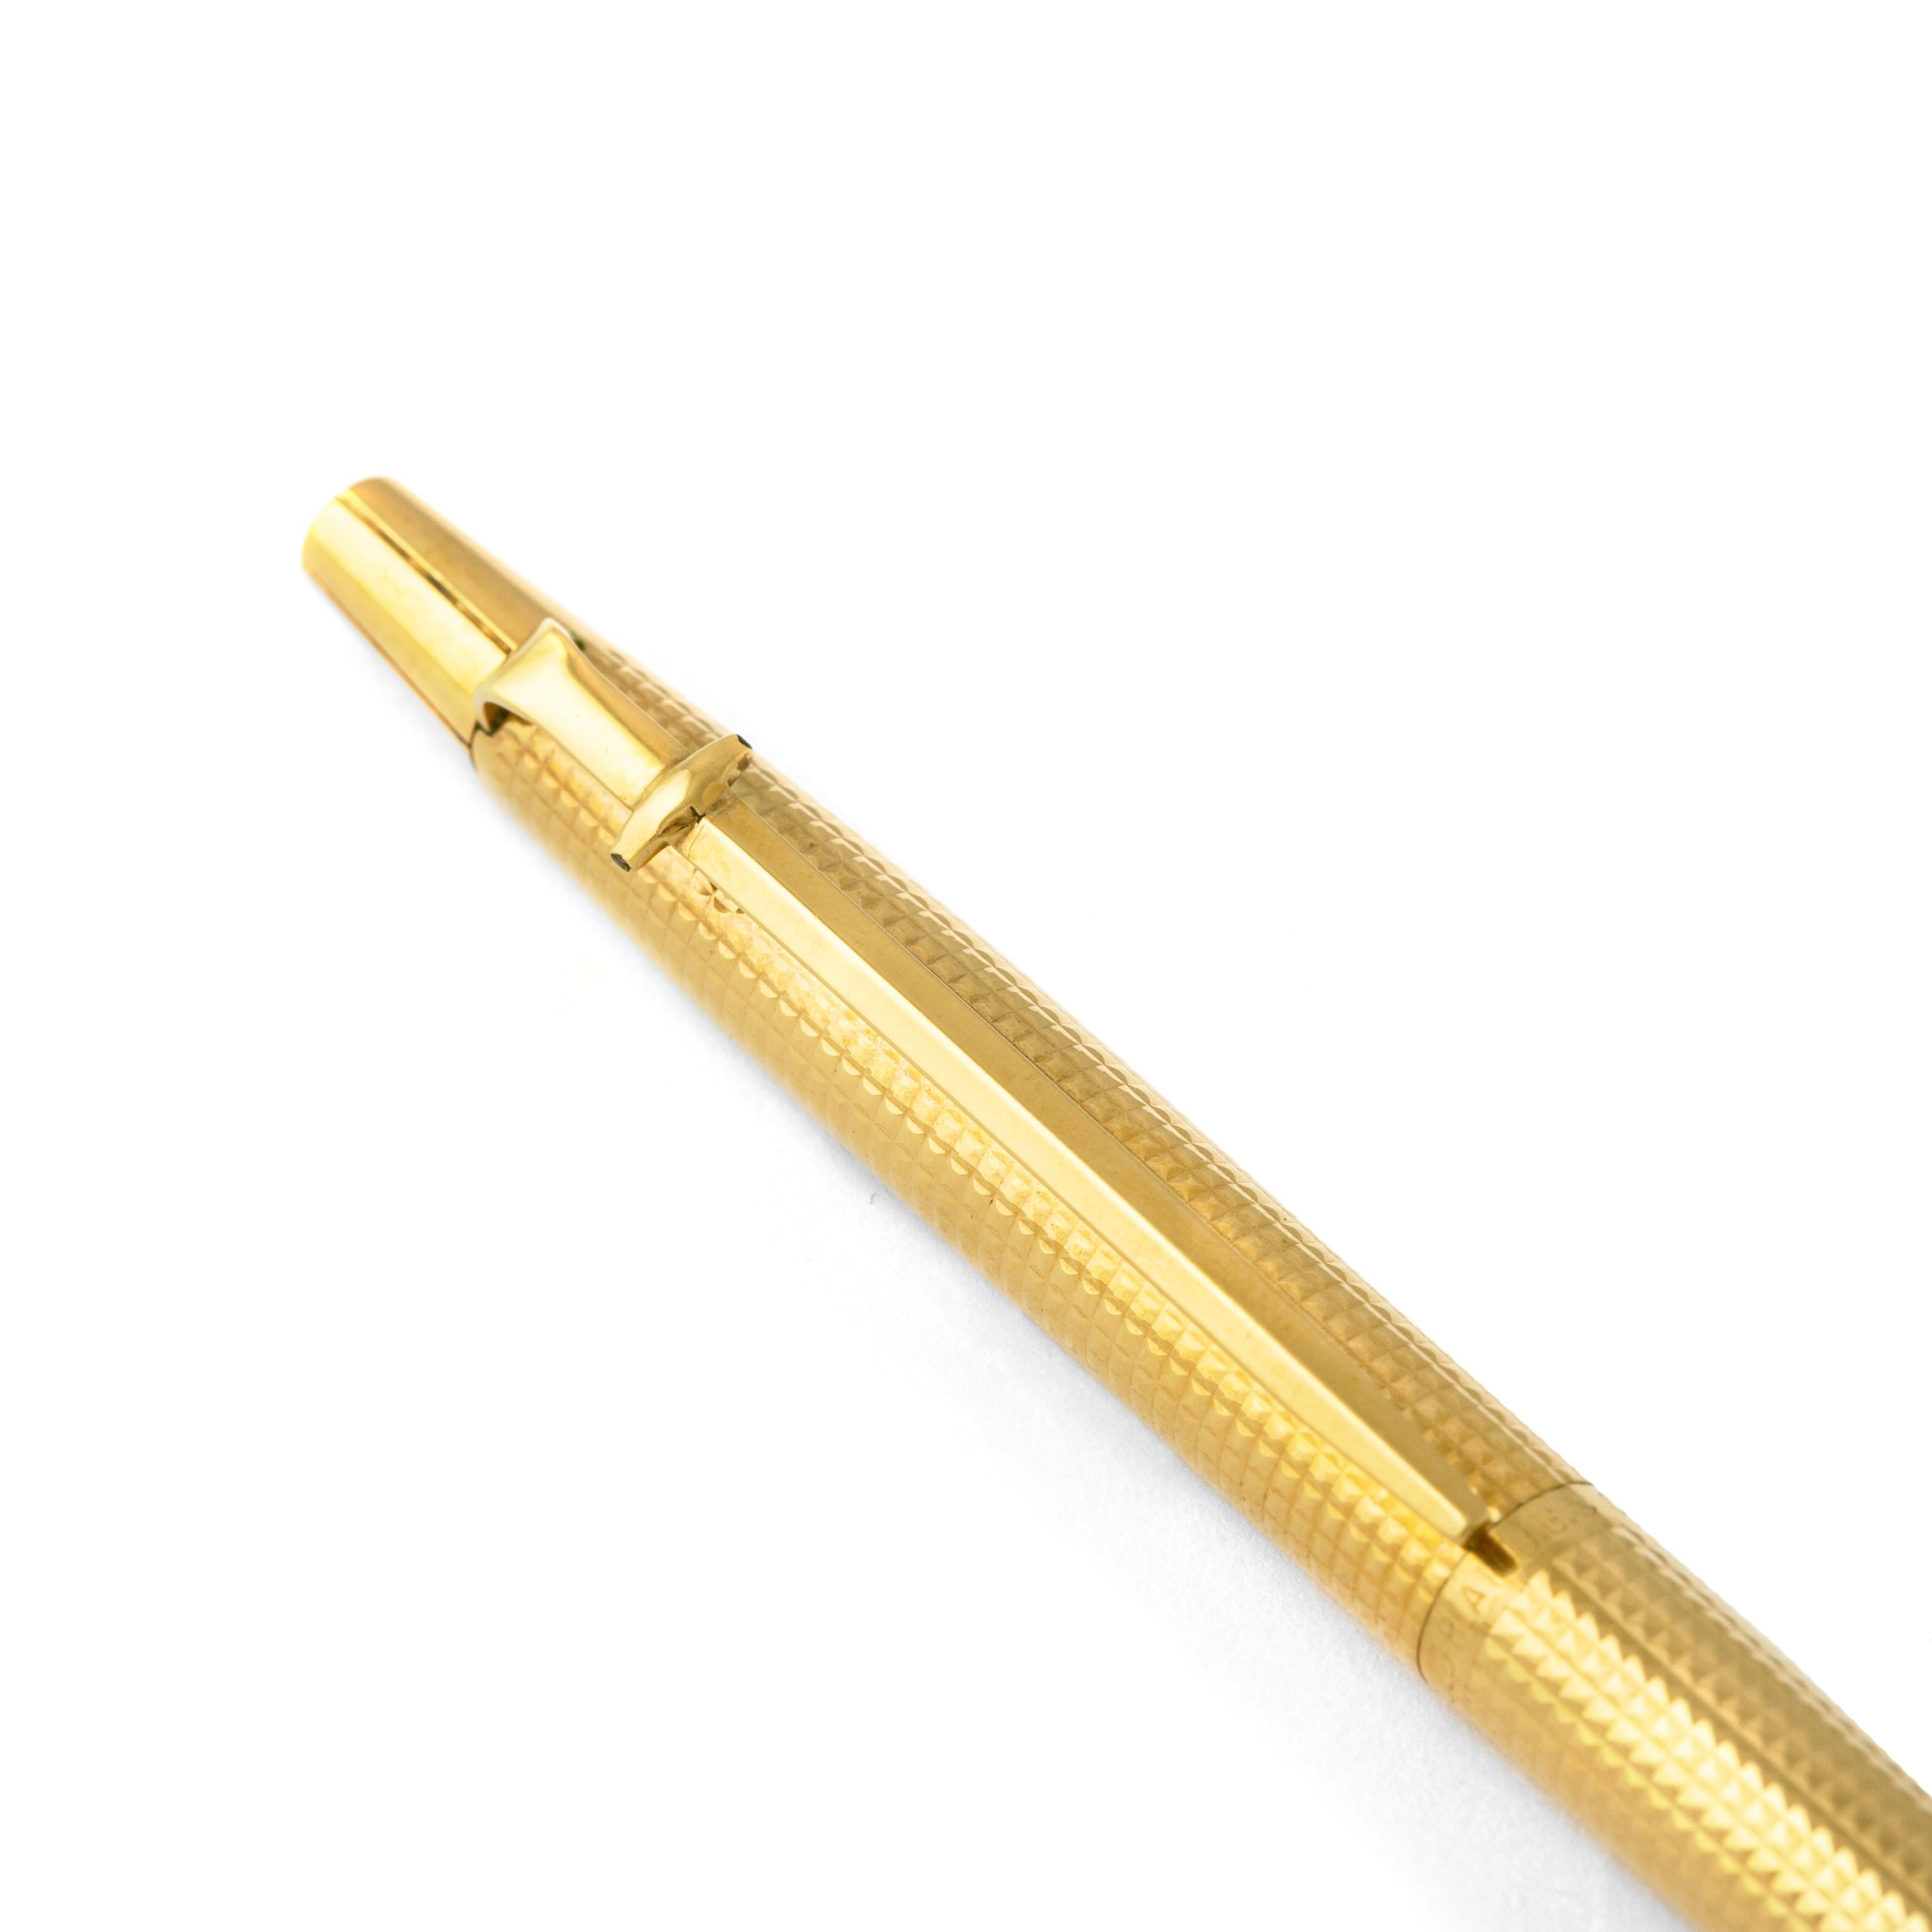 Caran d'Ache. Collection Madison. 
Vergoldeter Kugelschreiber.
Circa 1990. 
Abmessungen: 13,50 x 0,80 Zentimeter.

Verkauft wie besehen. Wir übernehmen keine Garantie für das einwandfreie Funktionieren dieses Stifts.